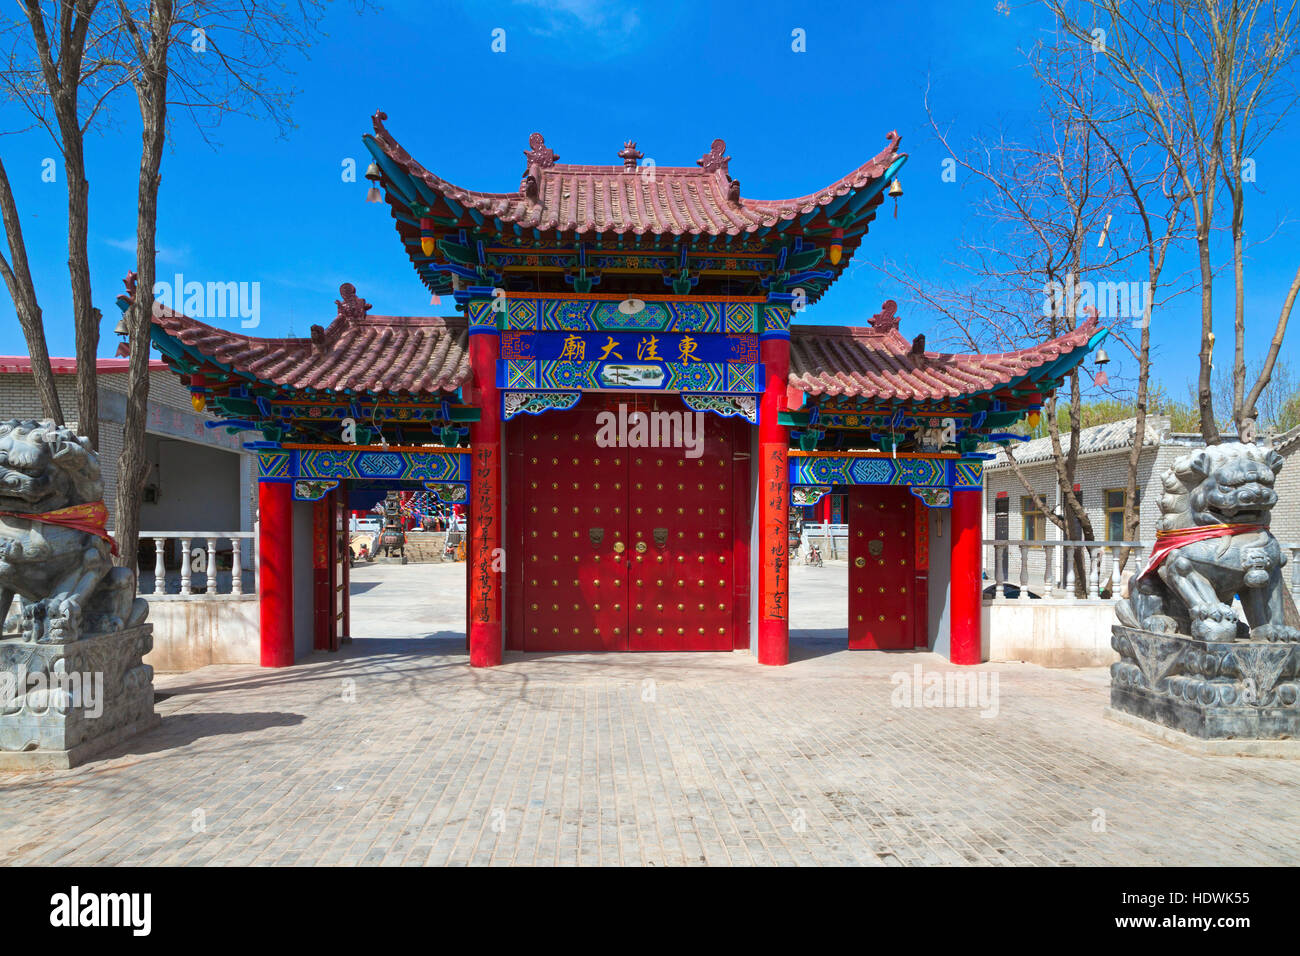 Chinese pagoda at Wuzhong, Ningxia province, China Stock Photo